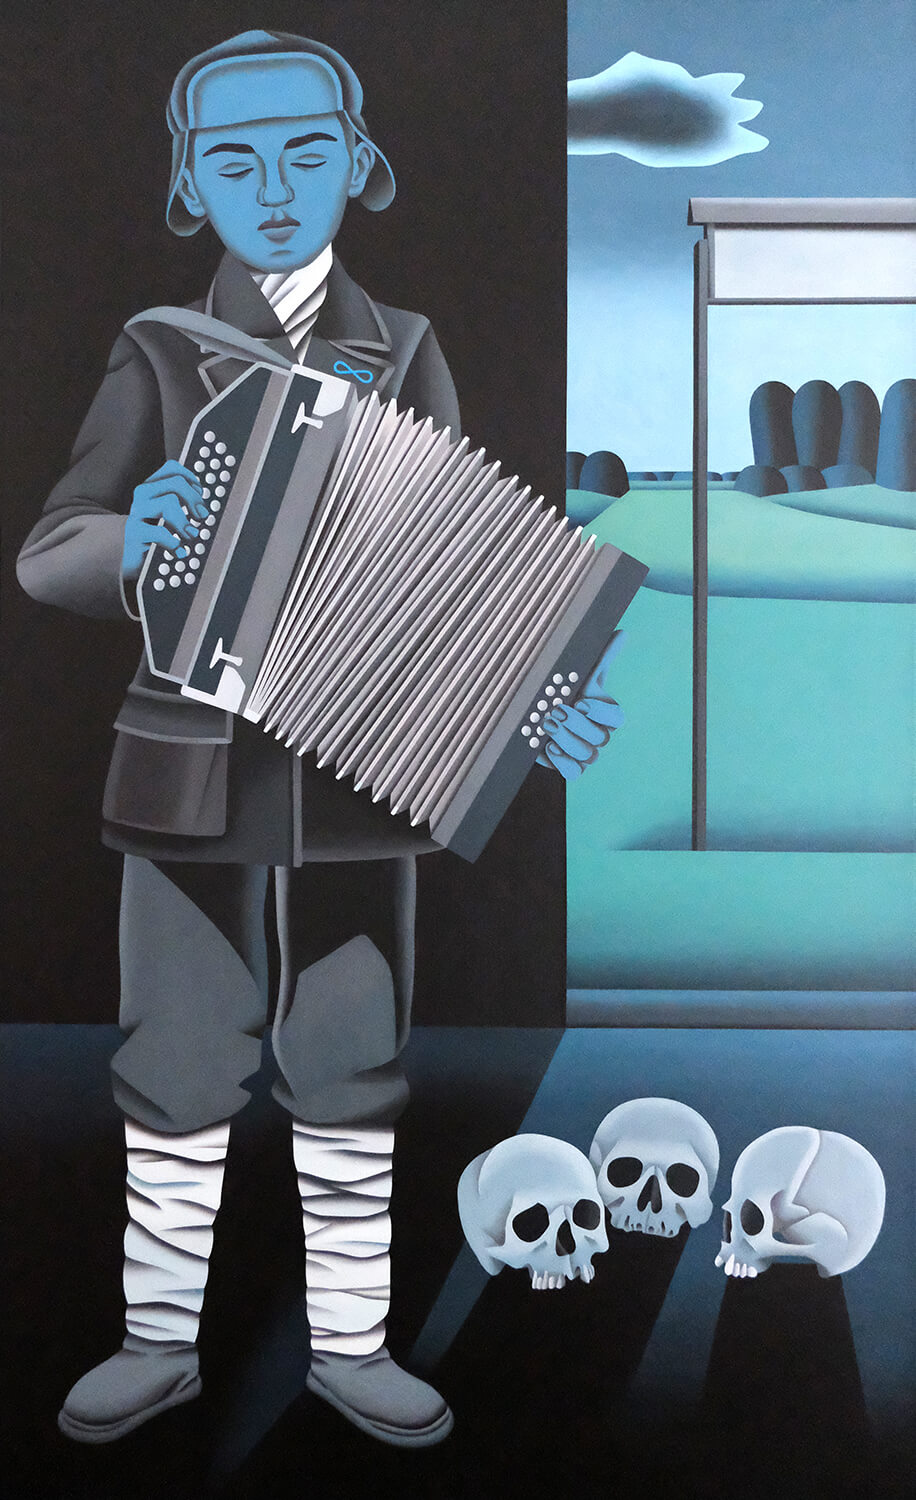 Jan Schüler, Edek (Treblinka), 2019, oil on canvas, 180 x 110 cm